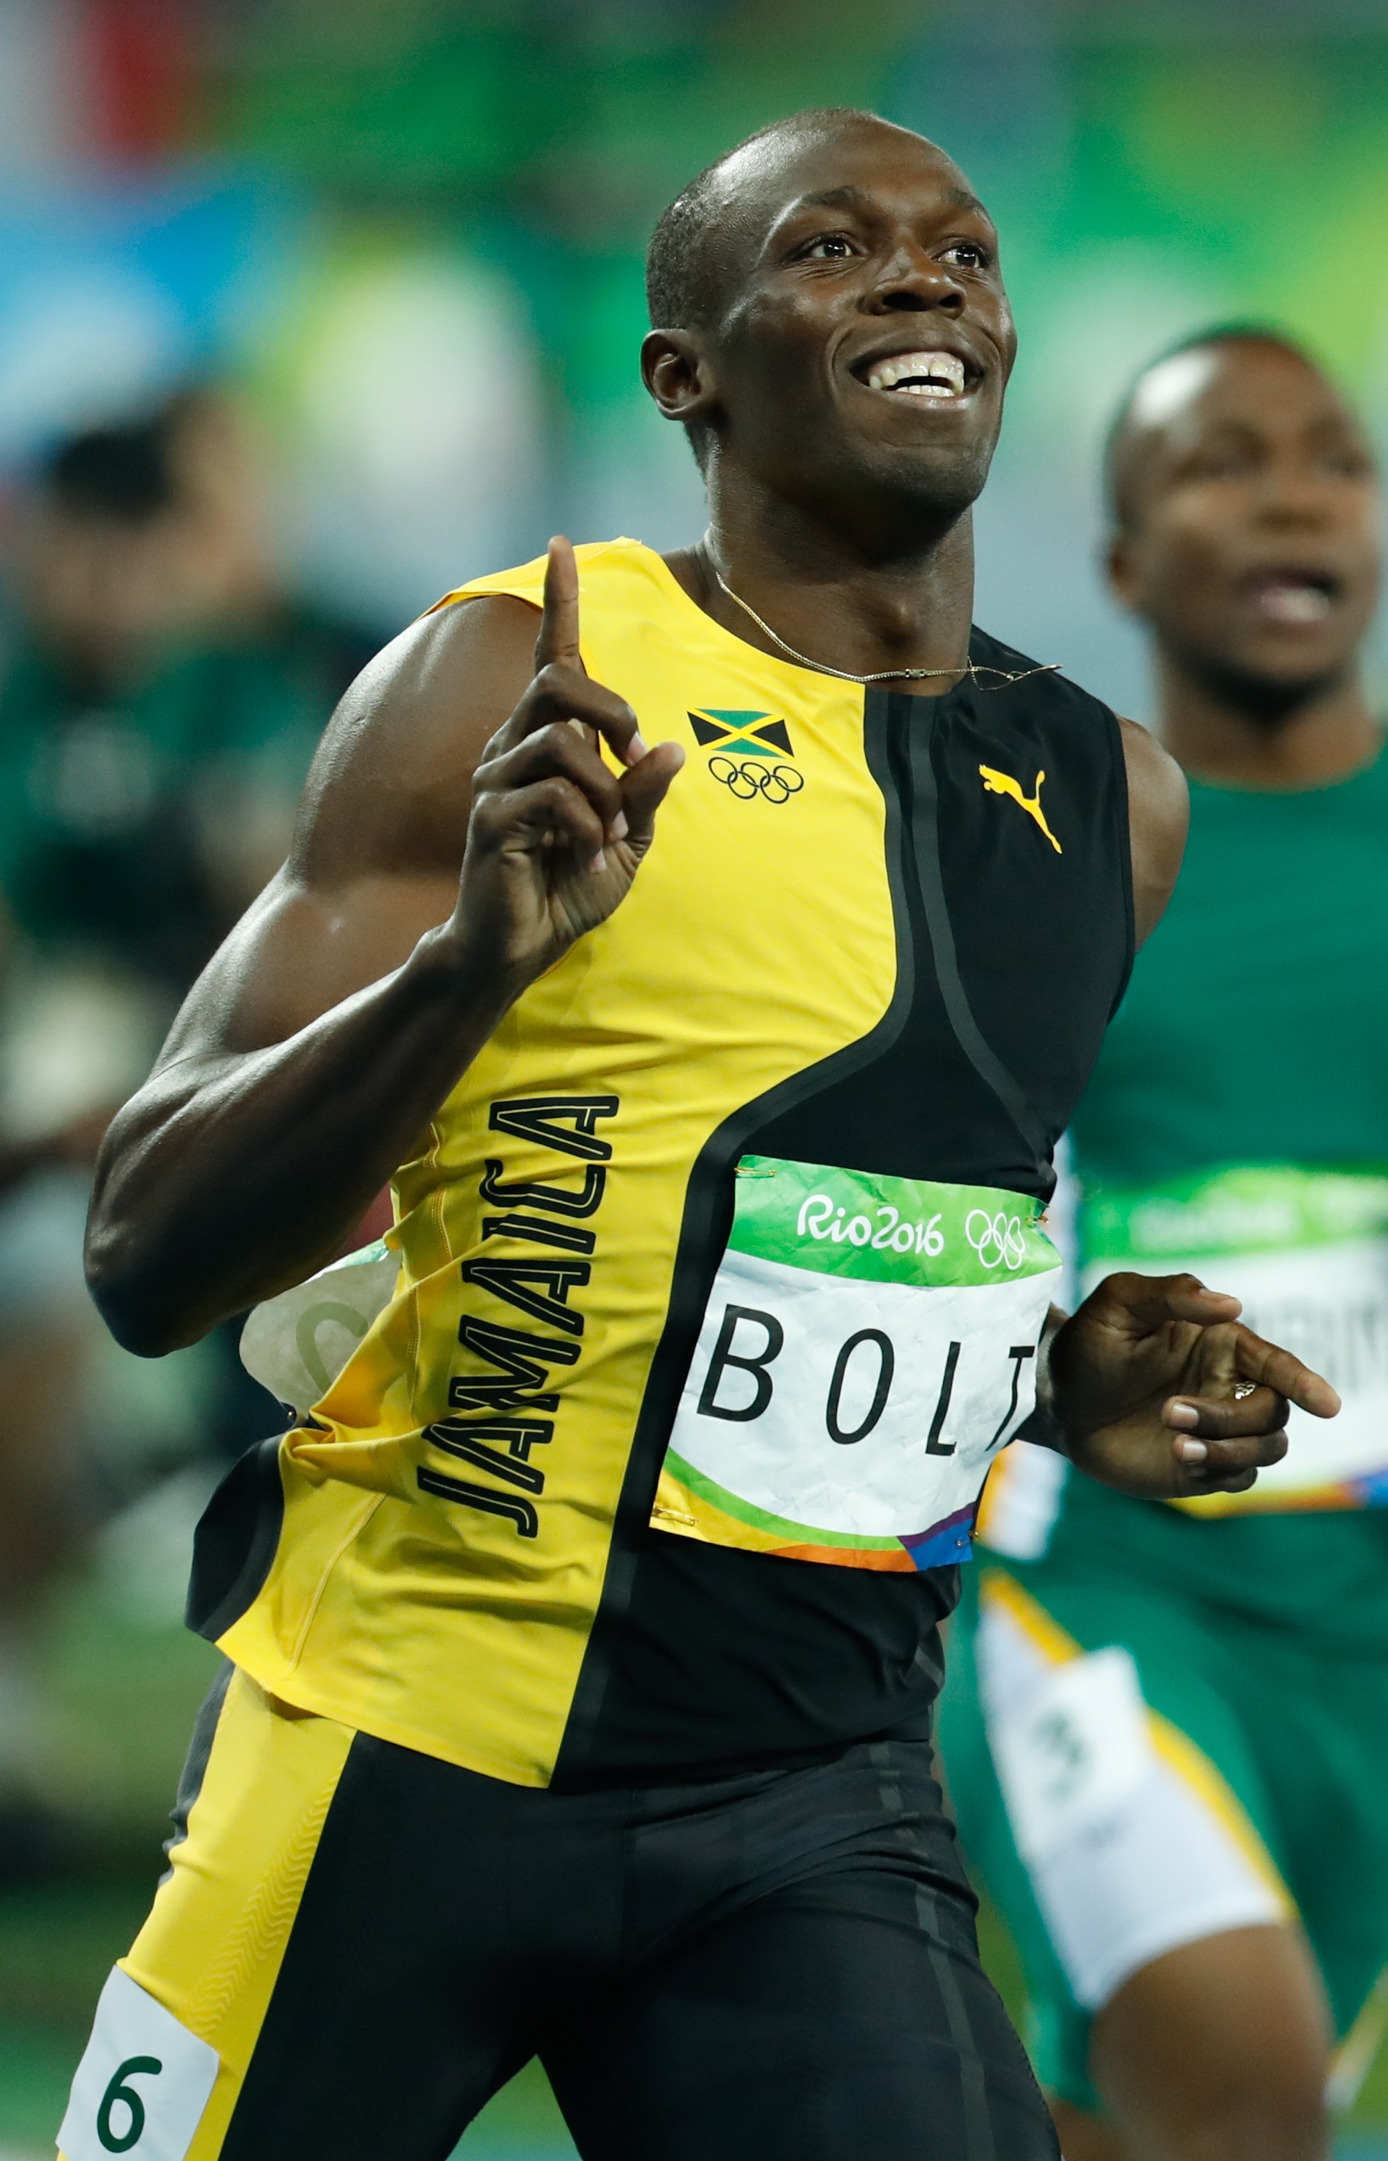 auteur Usain Bolt de la citation En fait, j'avais des pépites et surtout de la nourriture asiatique quand j'étais aux Jeux olympiques. Mais dès que je suis retourné en Jamaïque, ou quand j'étais à Londres, j'avais beaucoup d'ailes. C'était la première chose que j'ai demandée - "Hé, me procure des ailes."